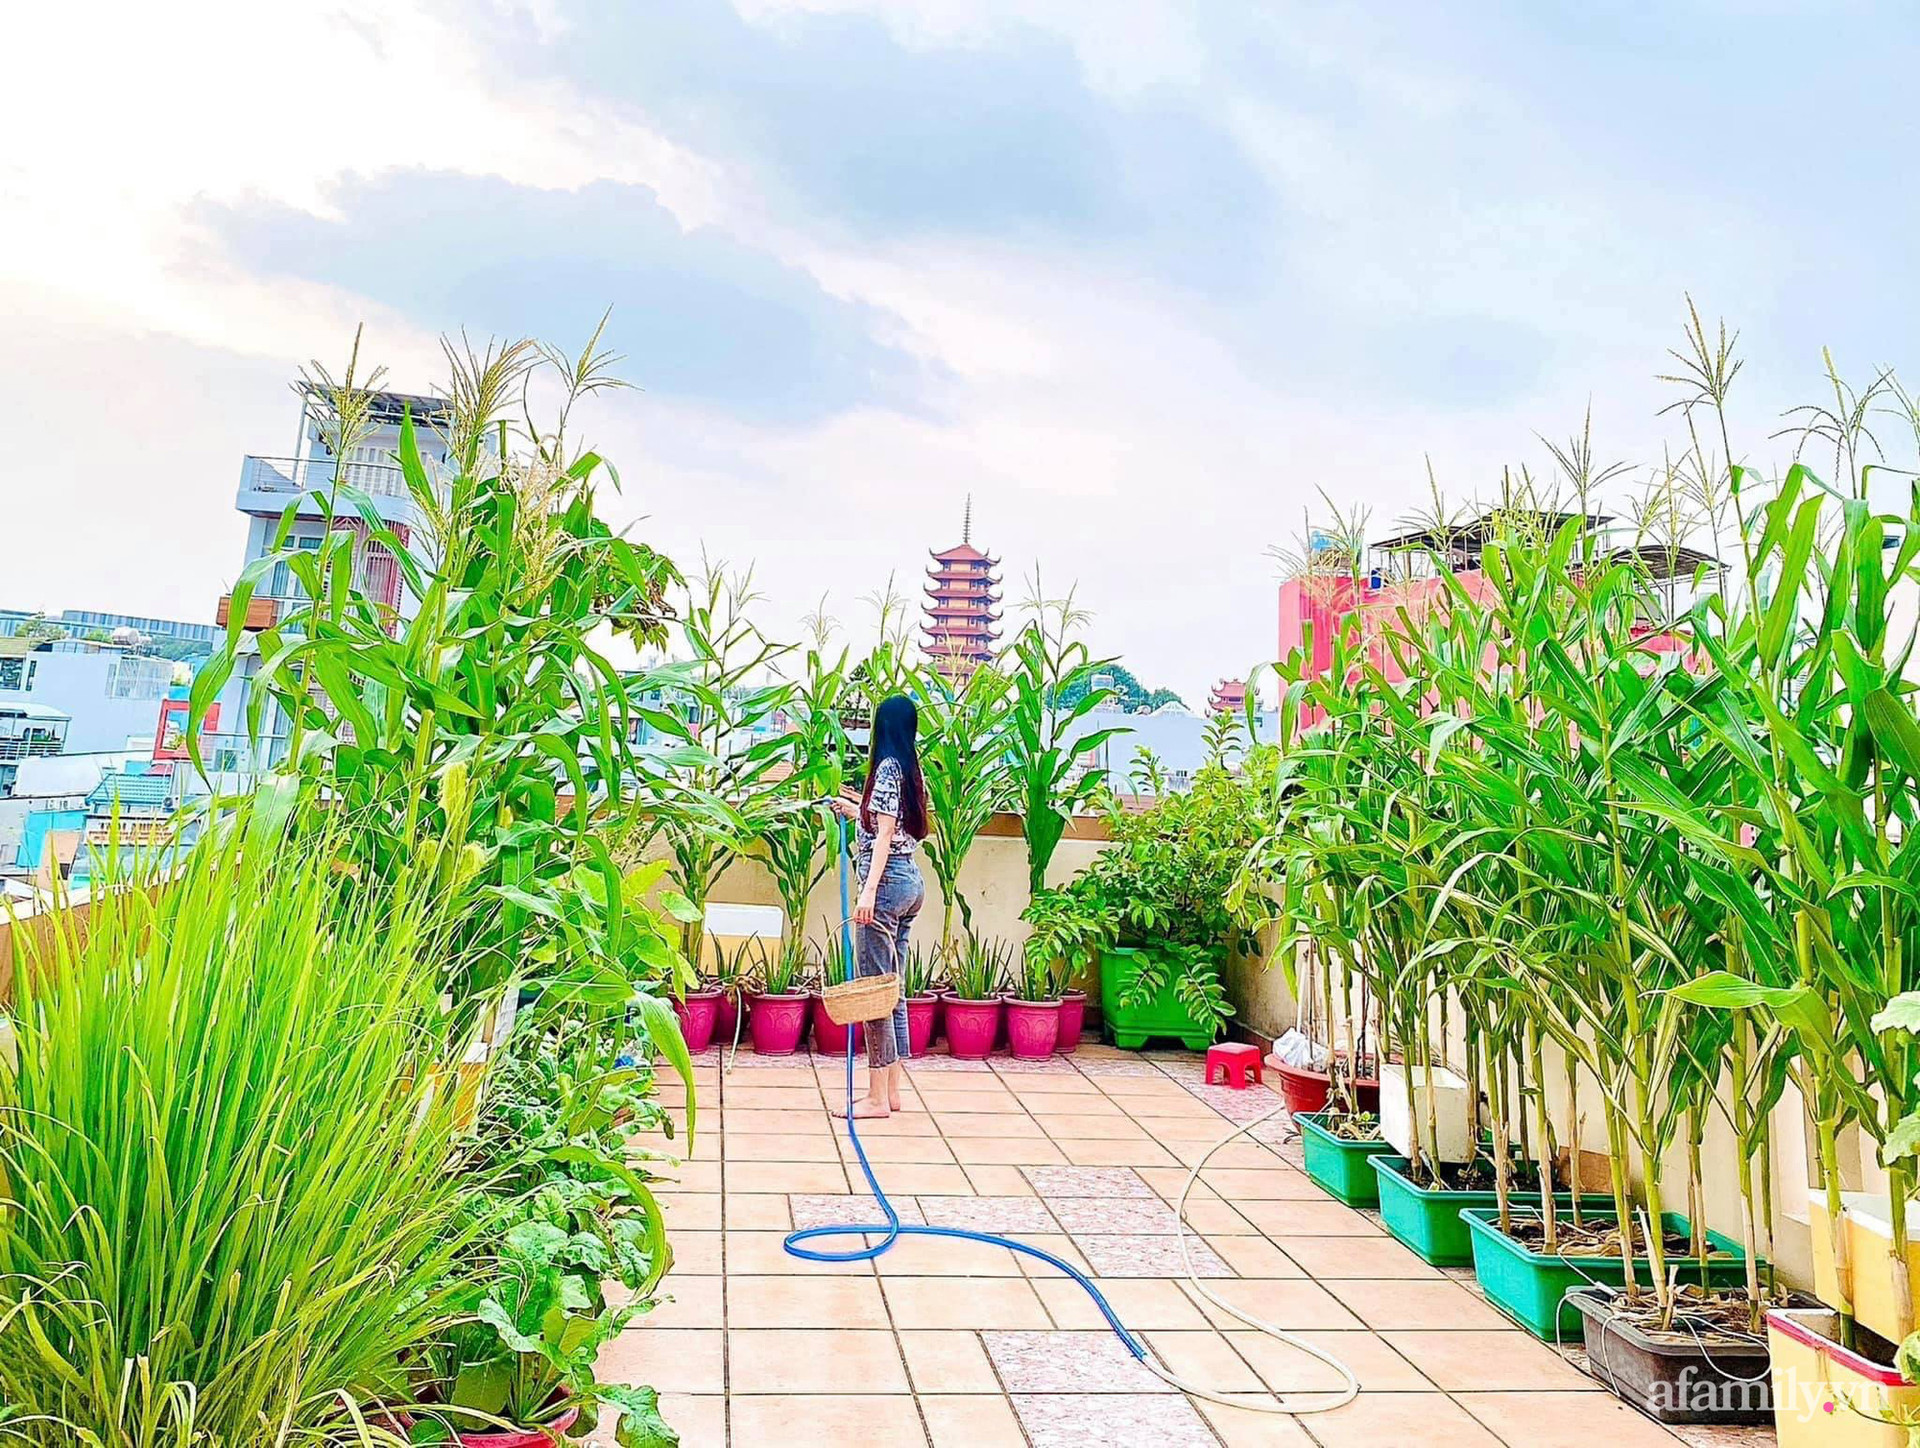 Khu vườn sân thượng Sài Gòn:
Bạn muốn tận hưởng không gian xanh mát giữa lòng thành phố? Khu vườn sân thượng tại Sài Gòn là lựa chọn tuyệt vời cho bạn. Với sự kết hợp giữa màu sắc của cây cối và hoa lá, bạn sẽ có cảm giác như được sống trong một thiên đường xanh mát. Điều này sẽ làm cho bạn cảm thấy thư giãn hơn trong cuộc sống bận rộn của mình.